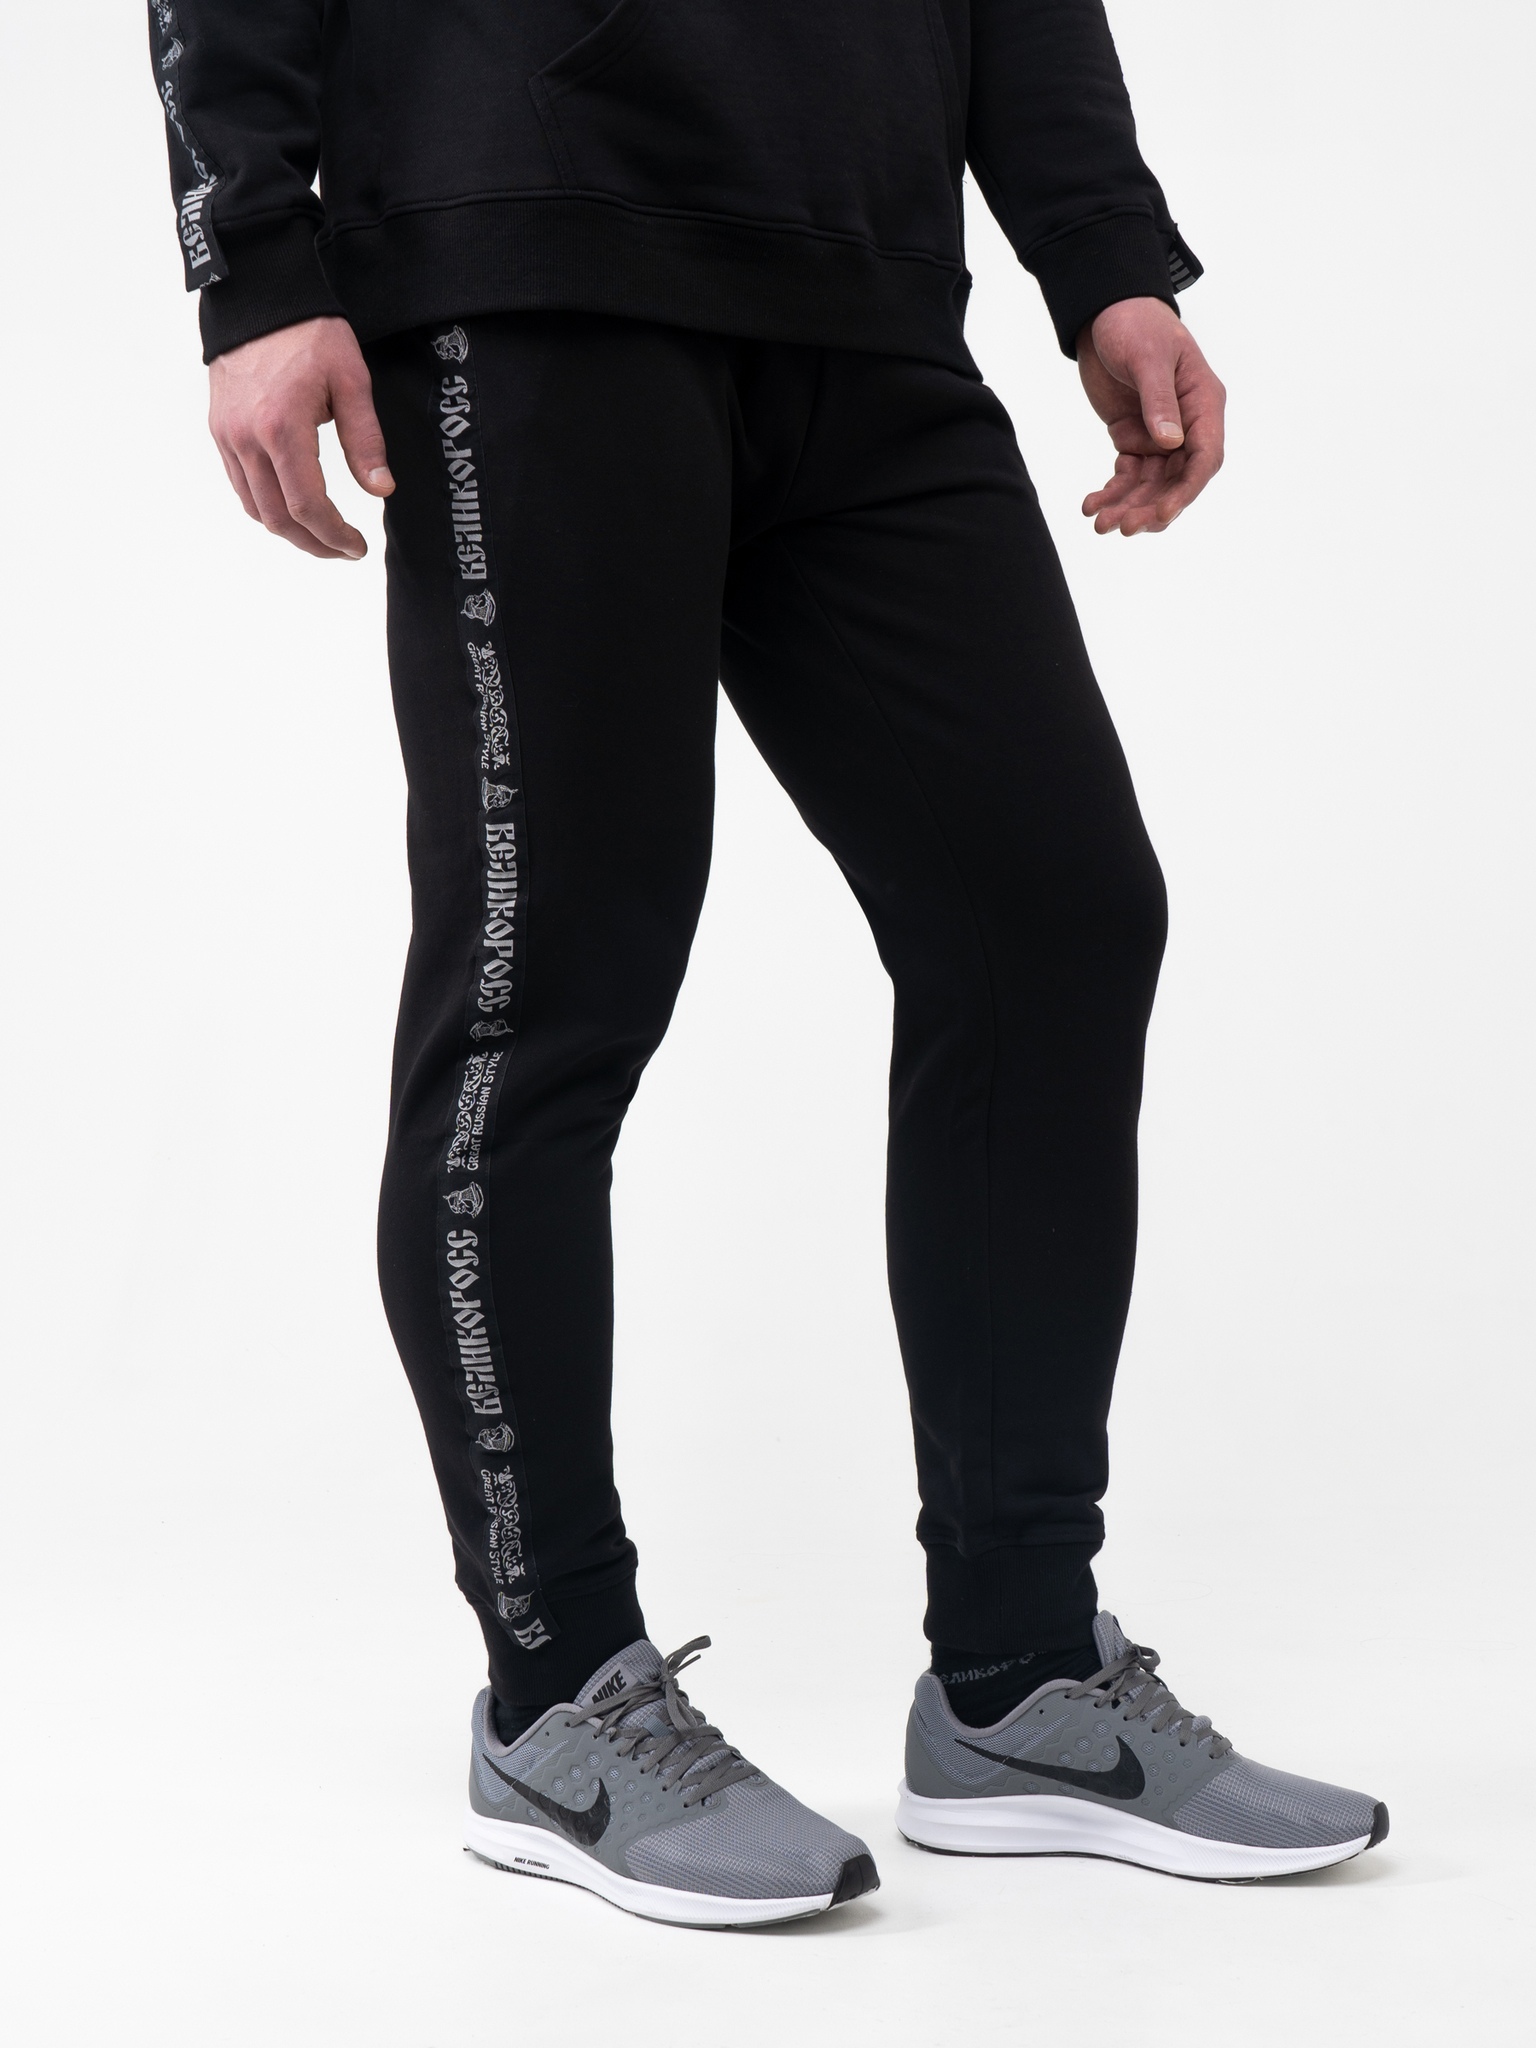 фото Спортивные брюки мужские великоросс bm черные 52 ru